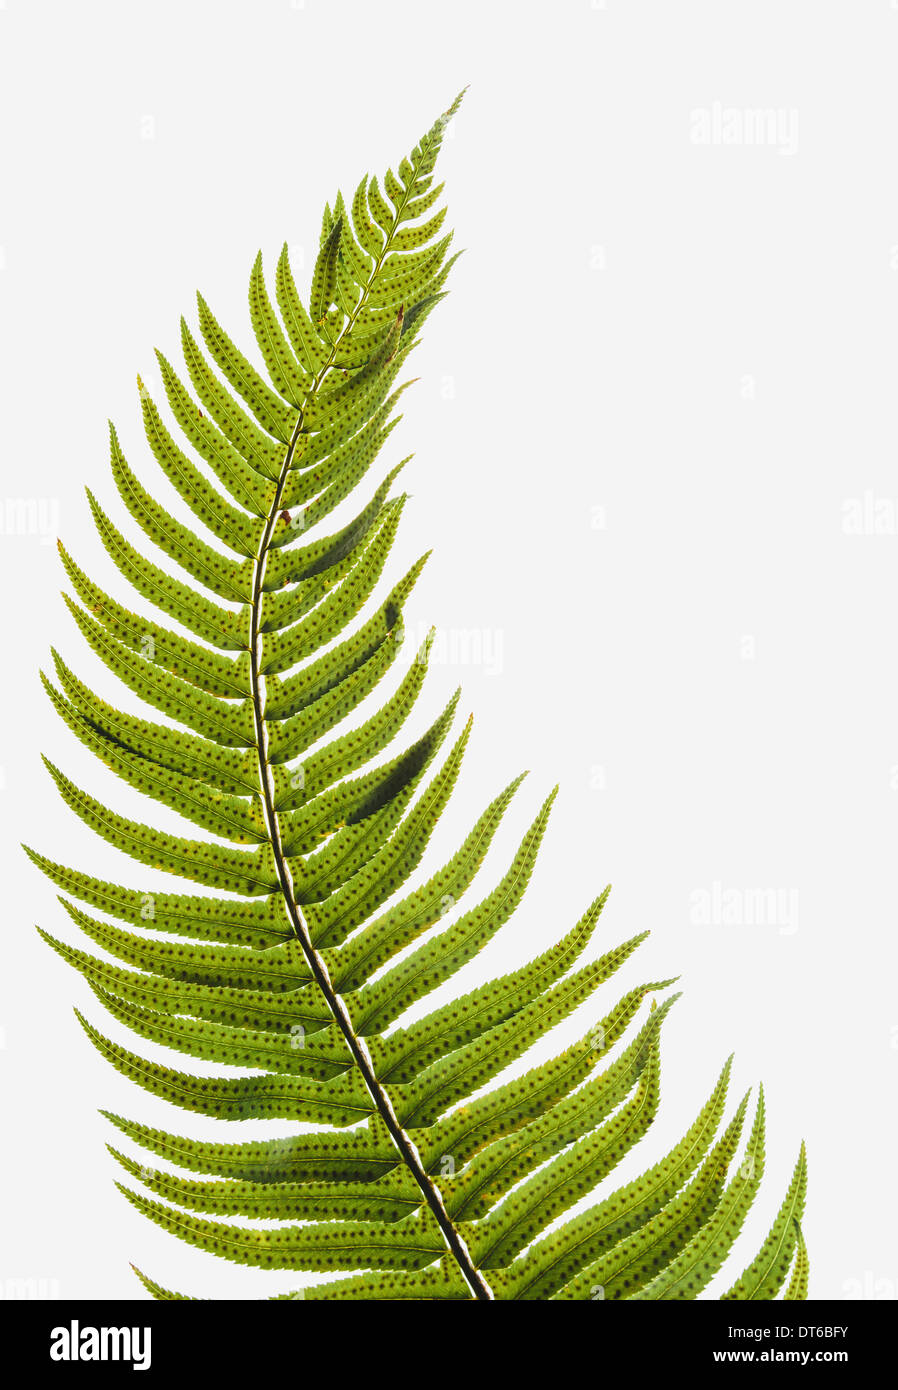 Western Sword fern, una sola hoja con hojas espaciados uniformemente en el tallo. Polystichum munitum. Foto de stock